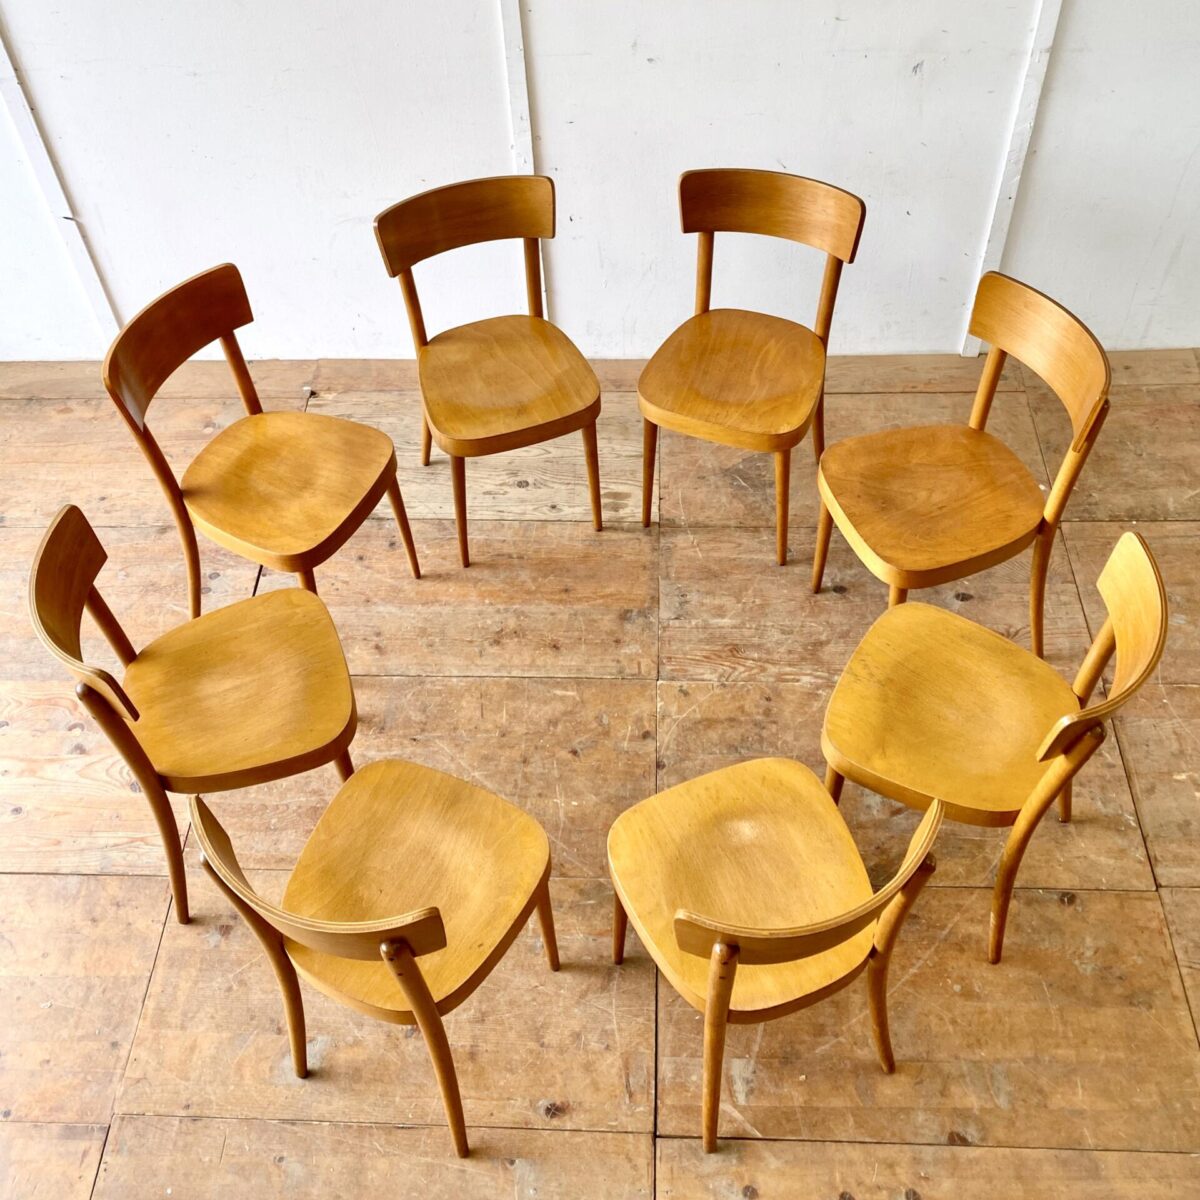 Deuxieme.shop klassische Beizenstühle horgenglarus Classic. Schlichte Beizenstühle mit konischen Rundbeinen, von Eras Holland. Preis pro Stuhl. Die Stühle sind stabil, bequem und leicht restauriert. 